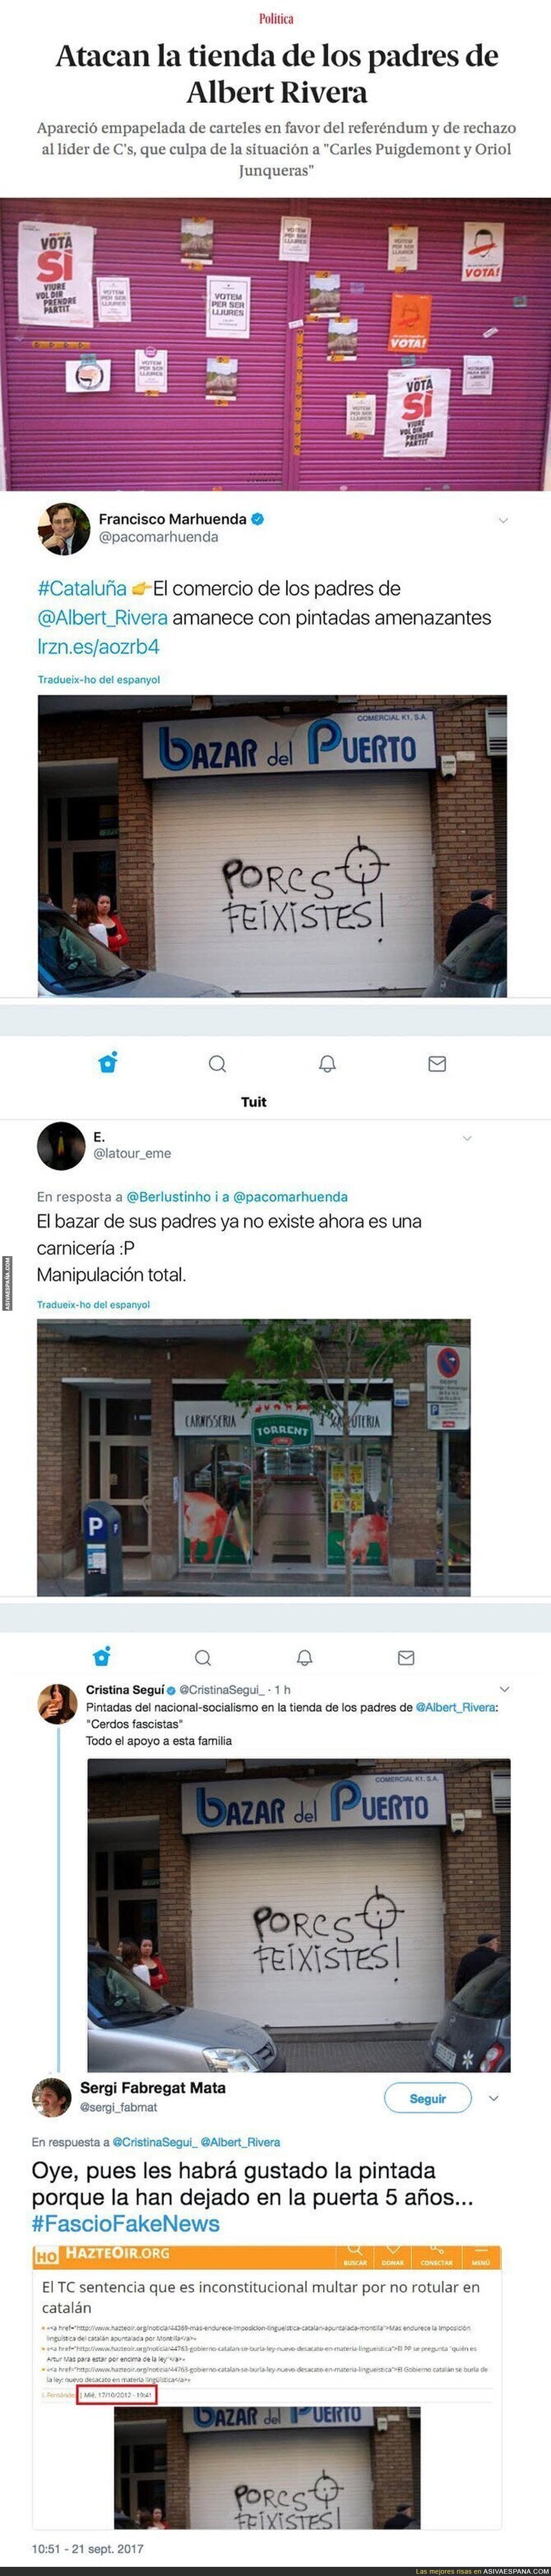 Anuncian vandalismo en la tienda de la madre de Albert Rivera en Catalunya y les pillan manipulando